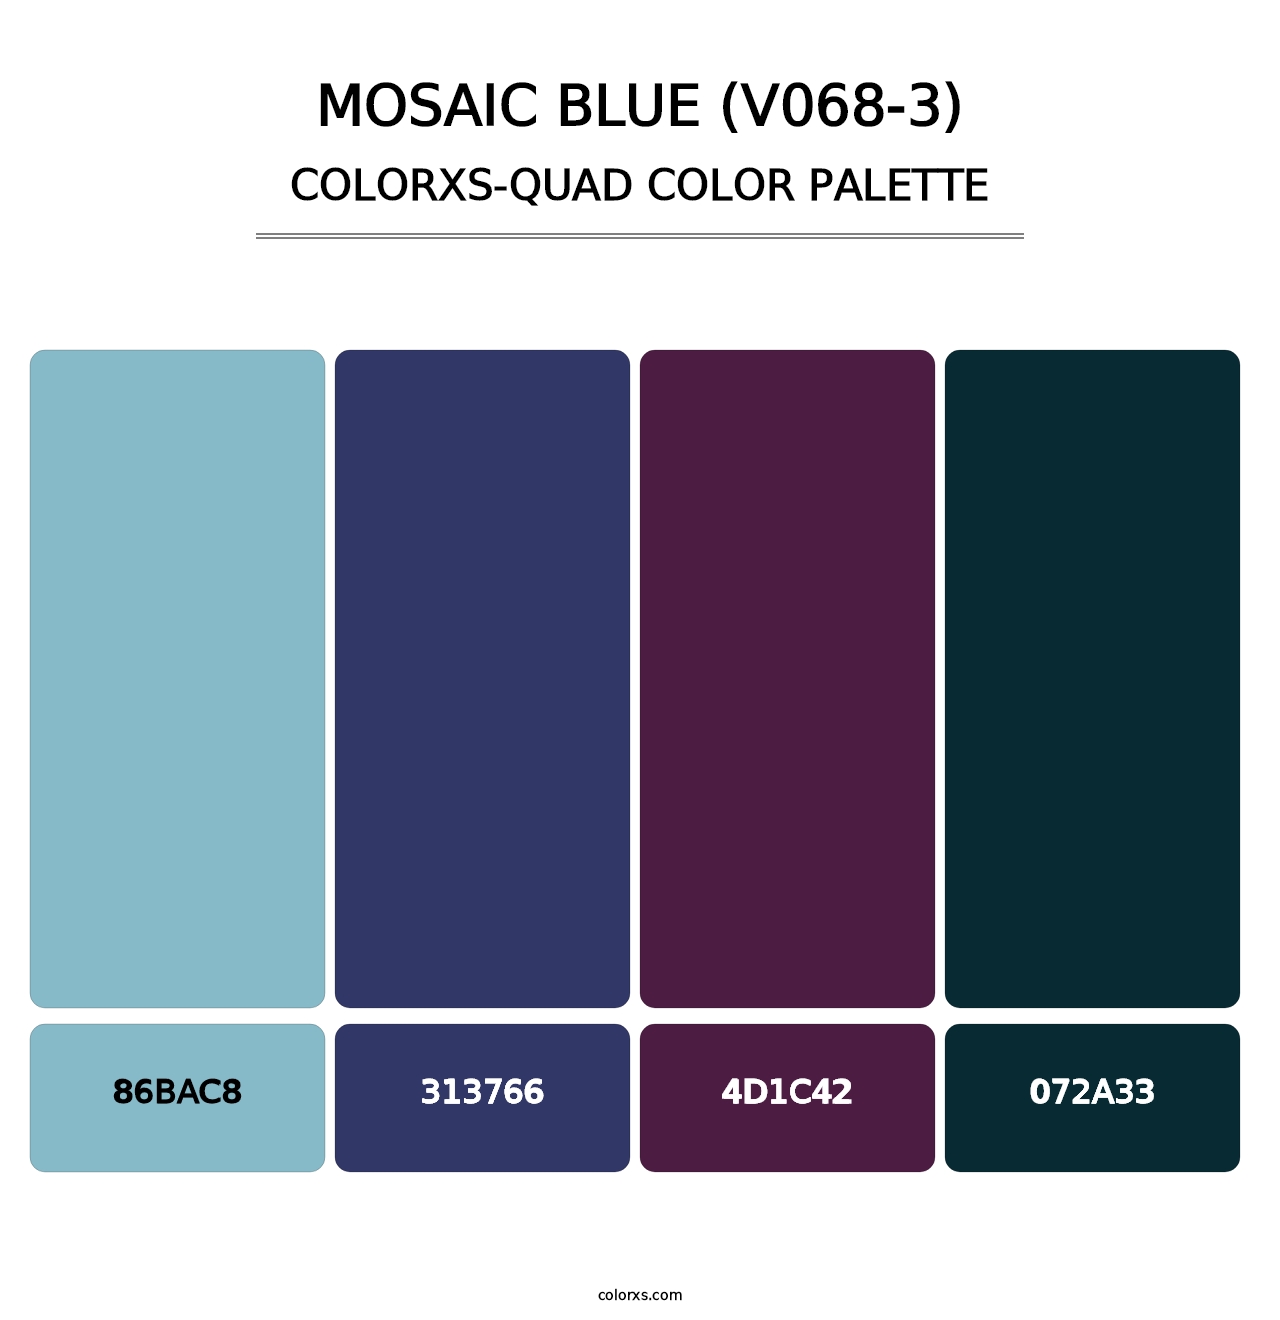 Mosaic Blue (V068-3) - Colorxs Quad Palette